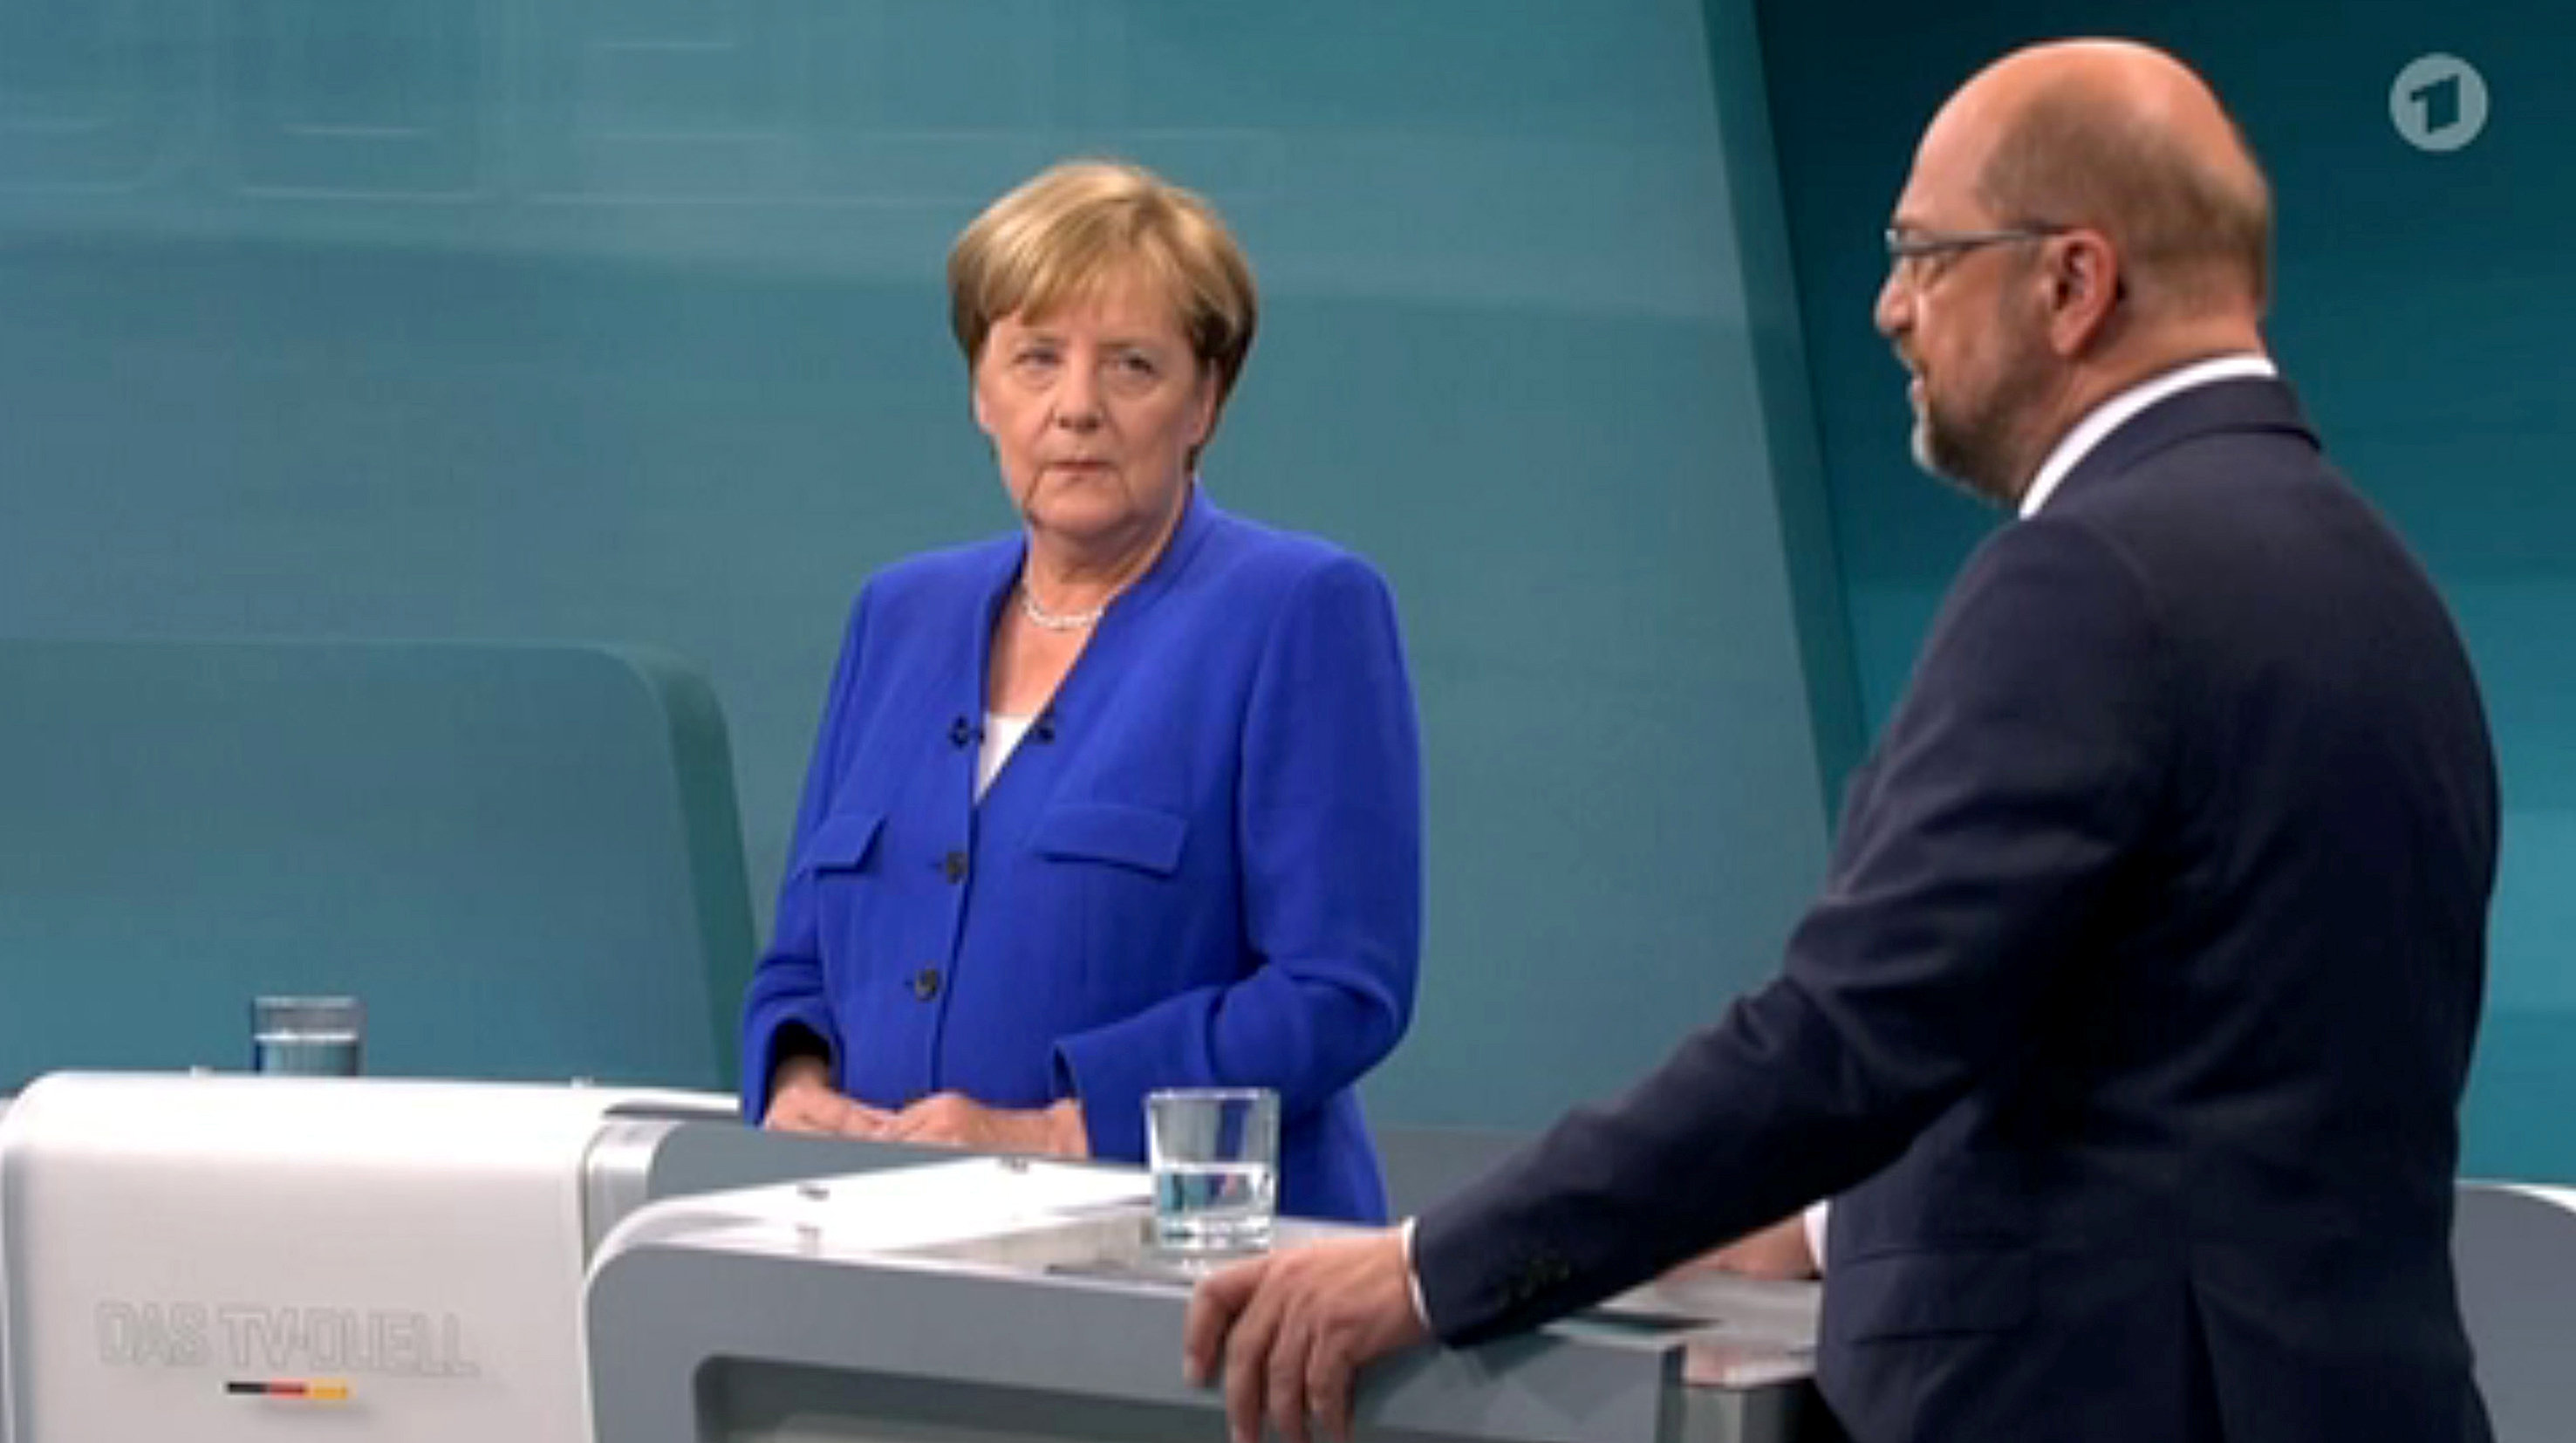 المستشارة الألمانية خلال المناظرة